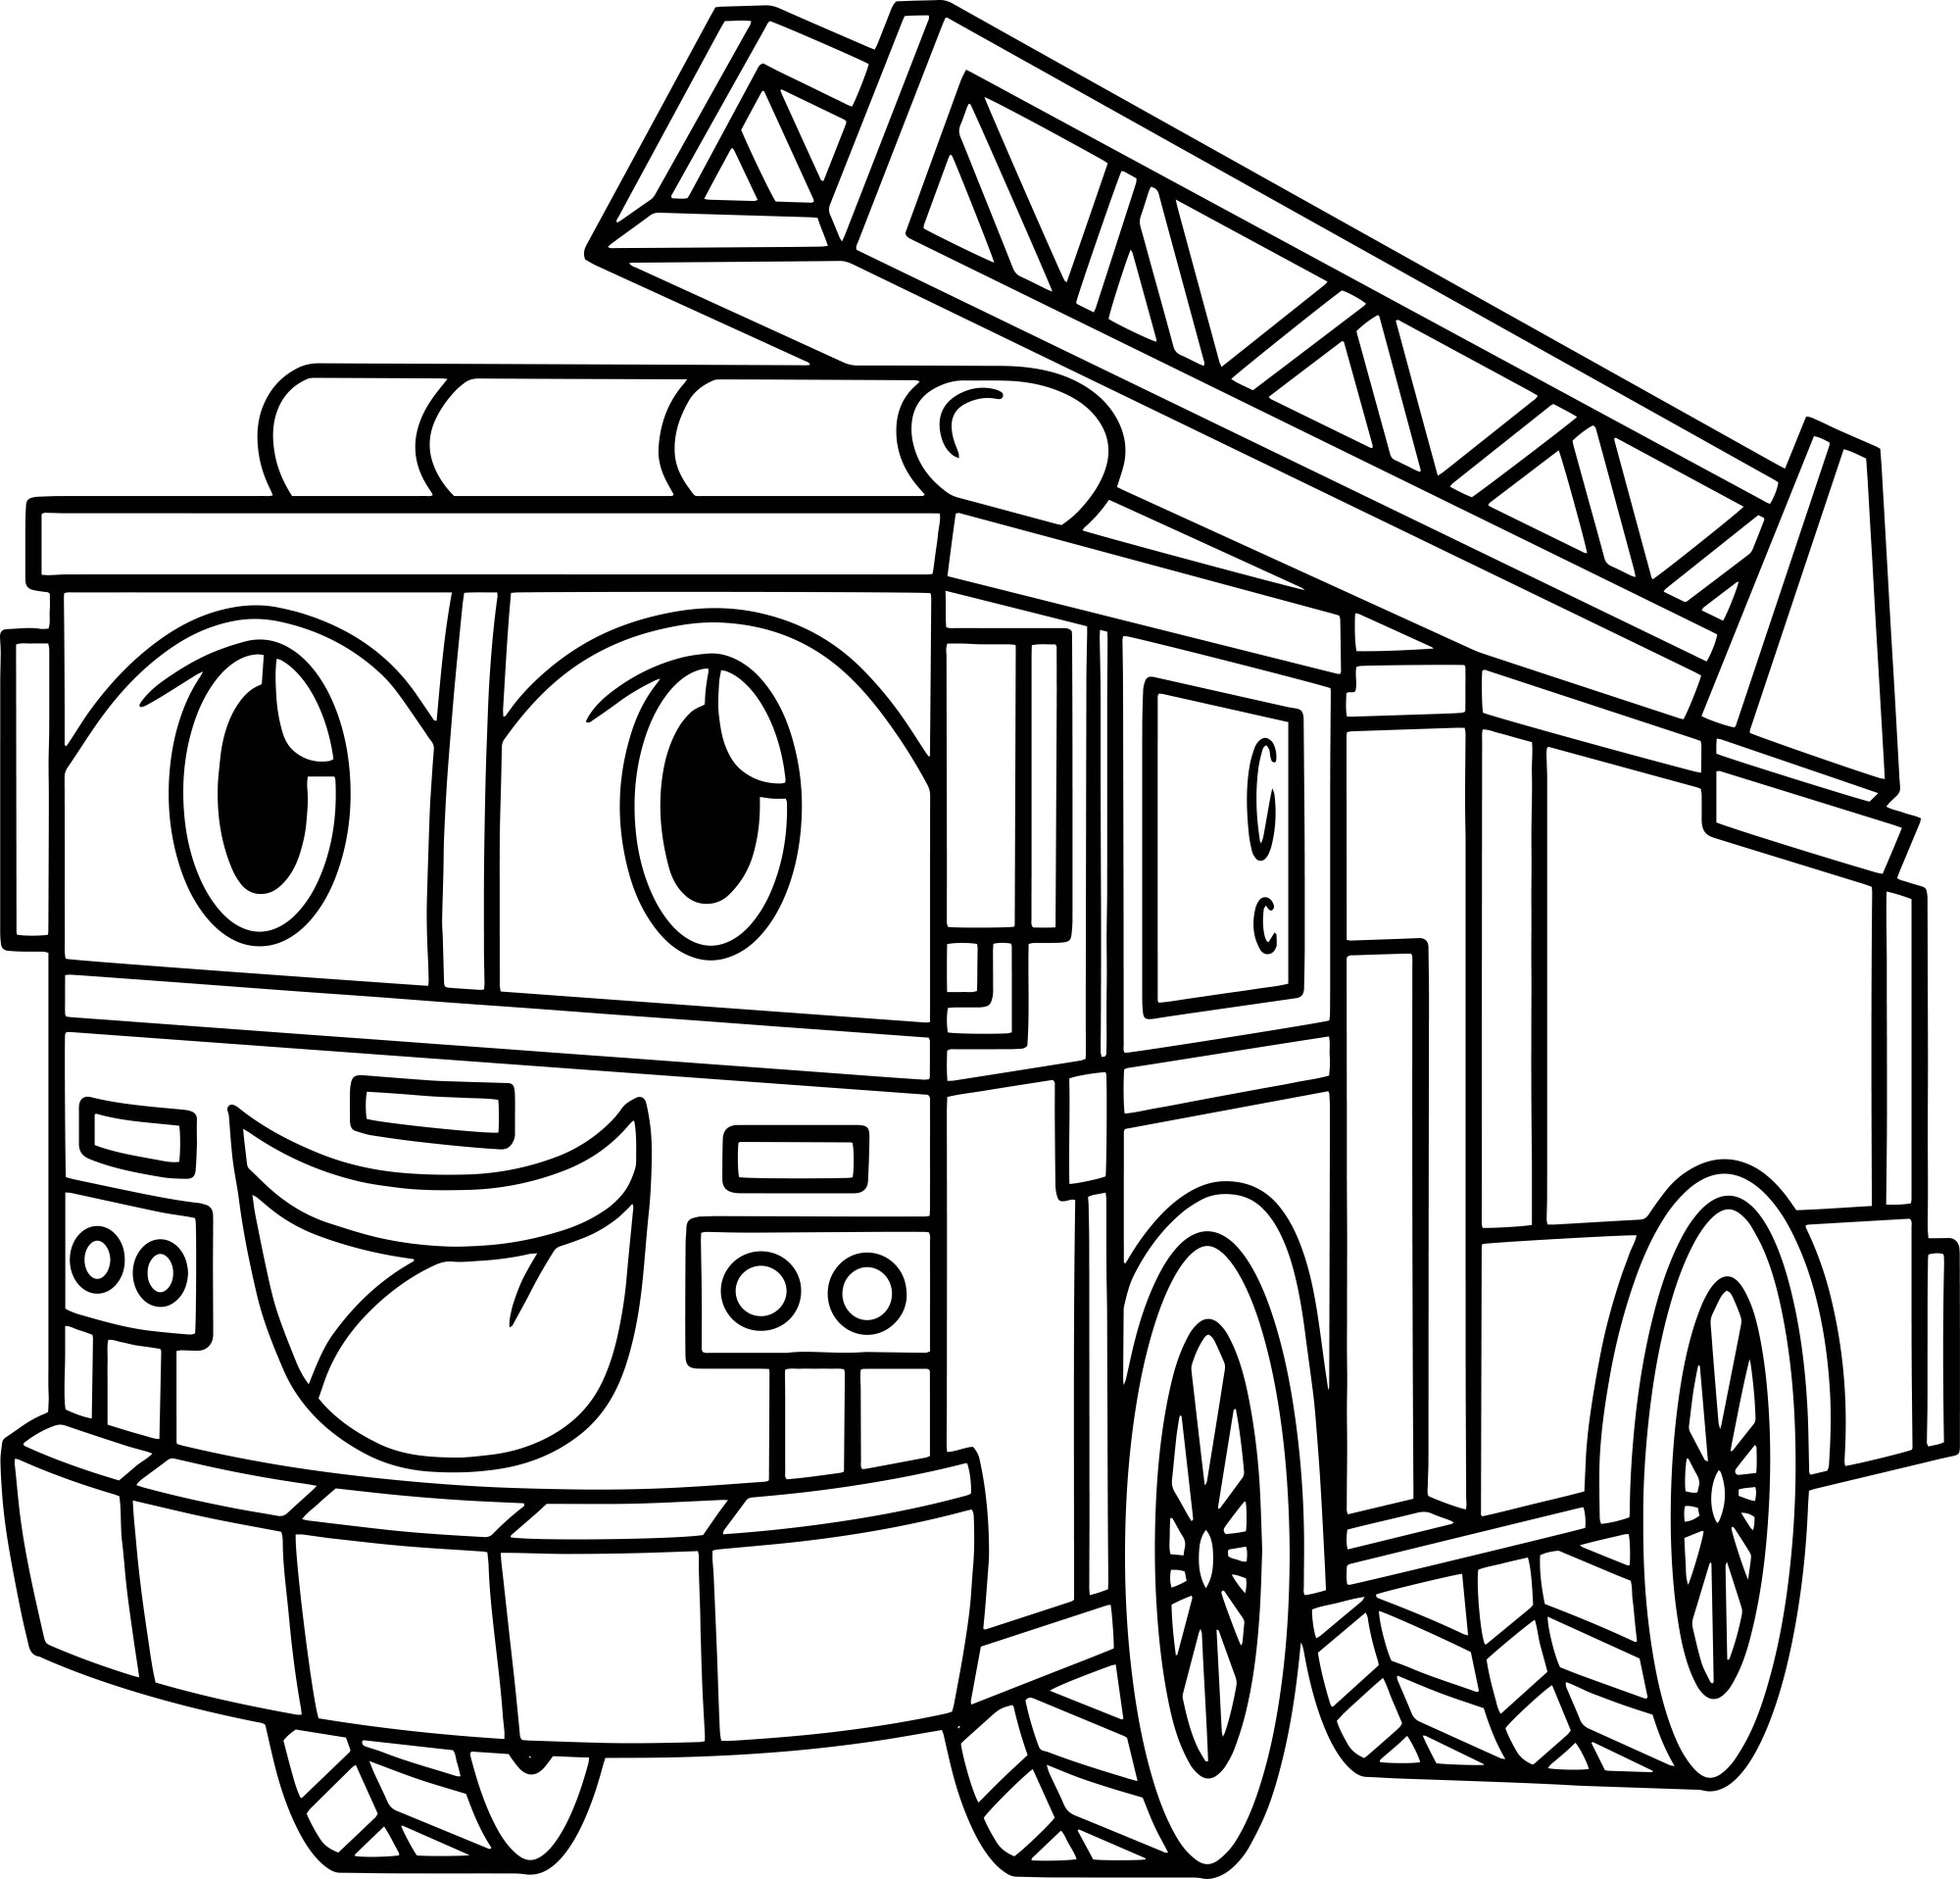 Раскраска для детей: игрушечная пожарная машина с лицом